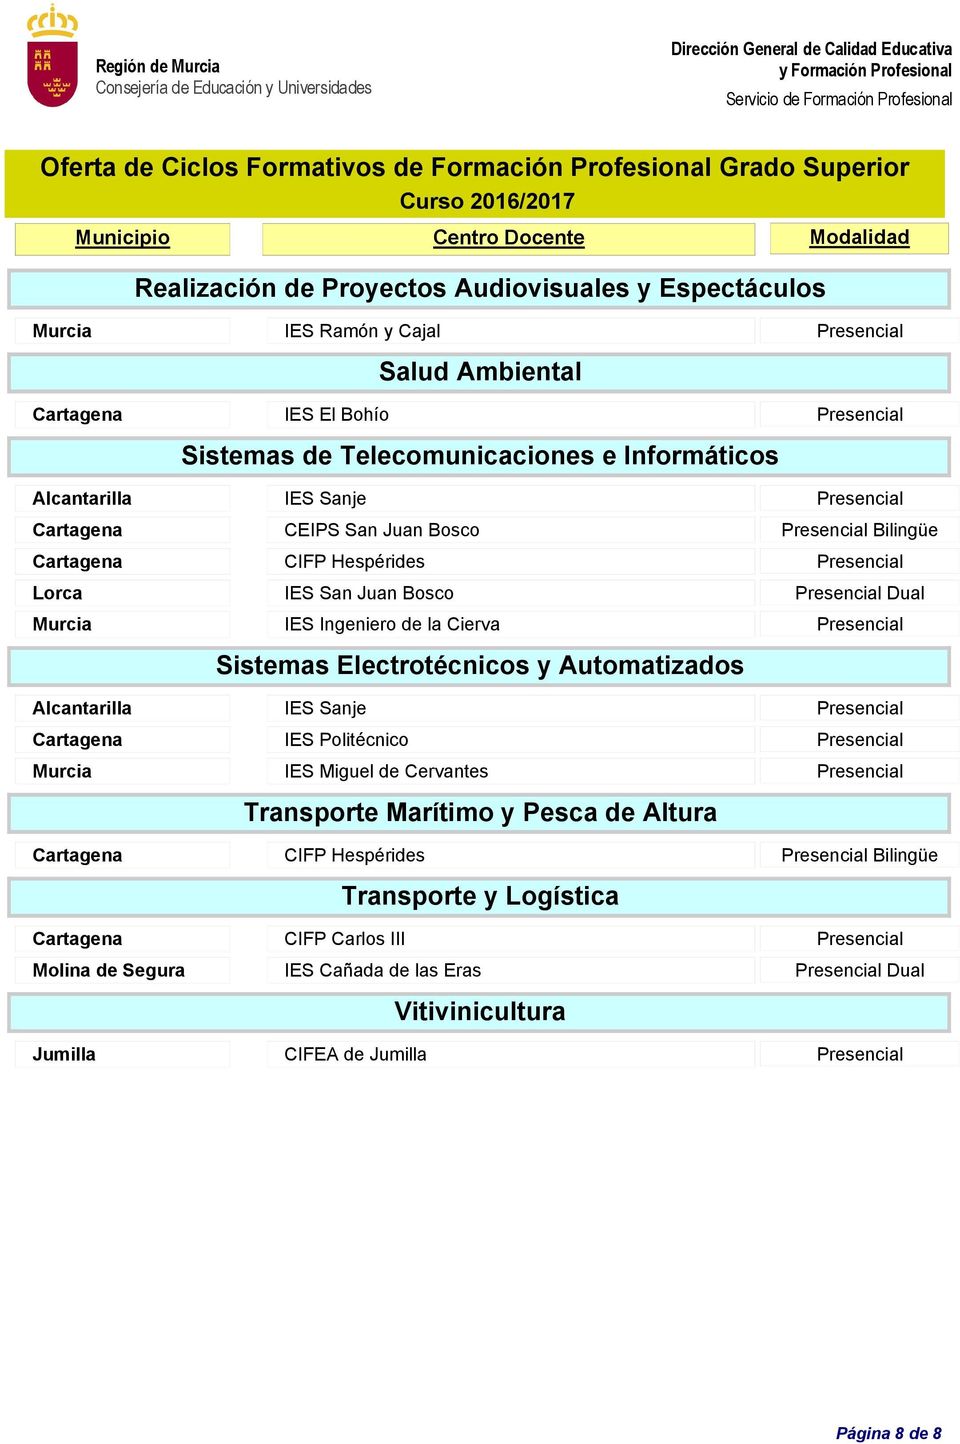 Sistemas Electrotécnicos y Automatizados Alcantarilla IES Sanje Presencial Transporte Marítimo y Pesca de Altura Cartagena CIFP Hespérides